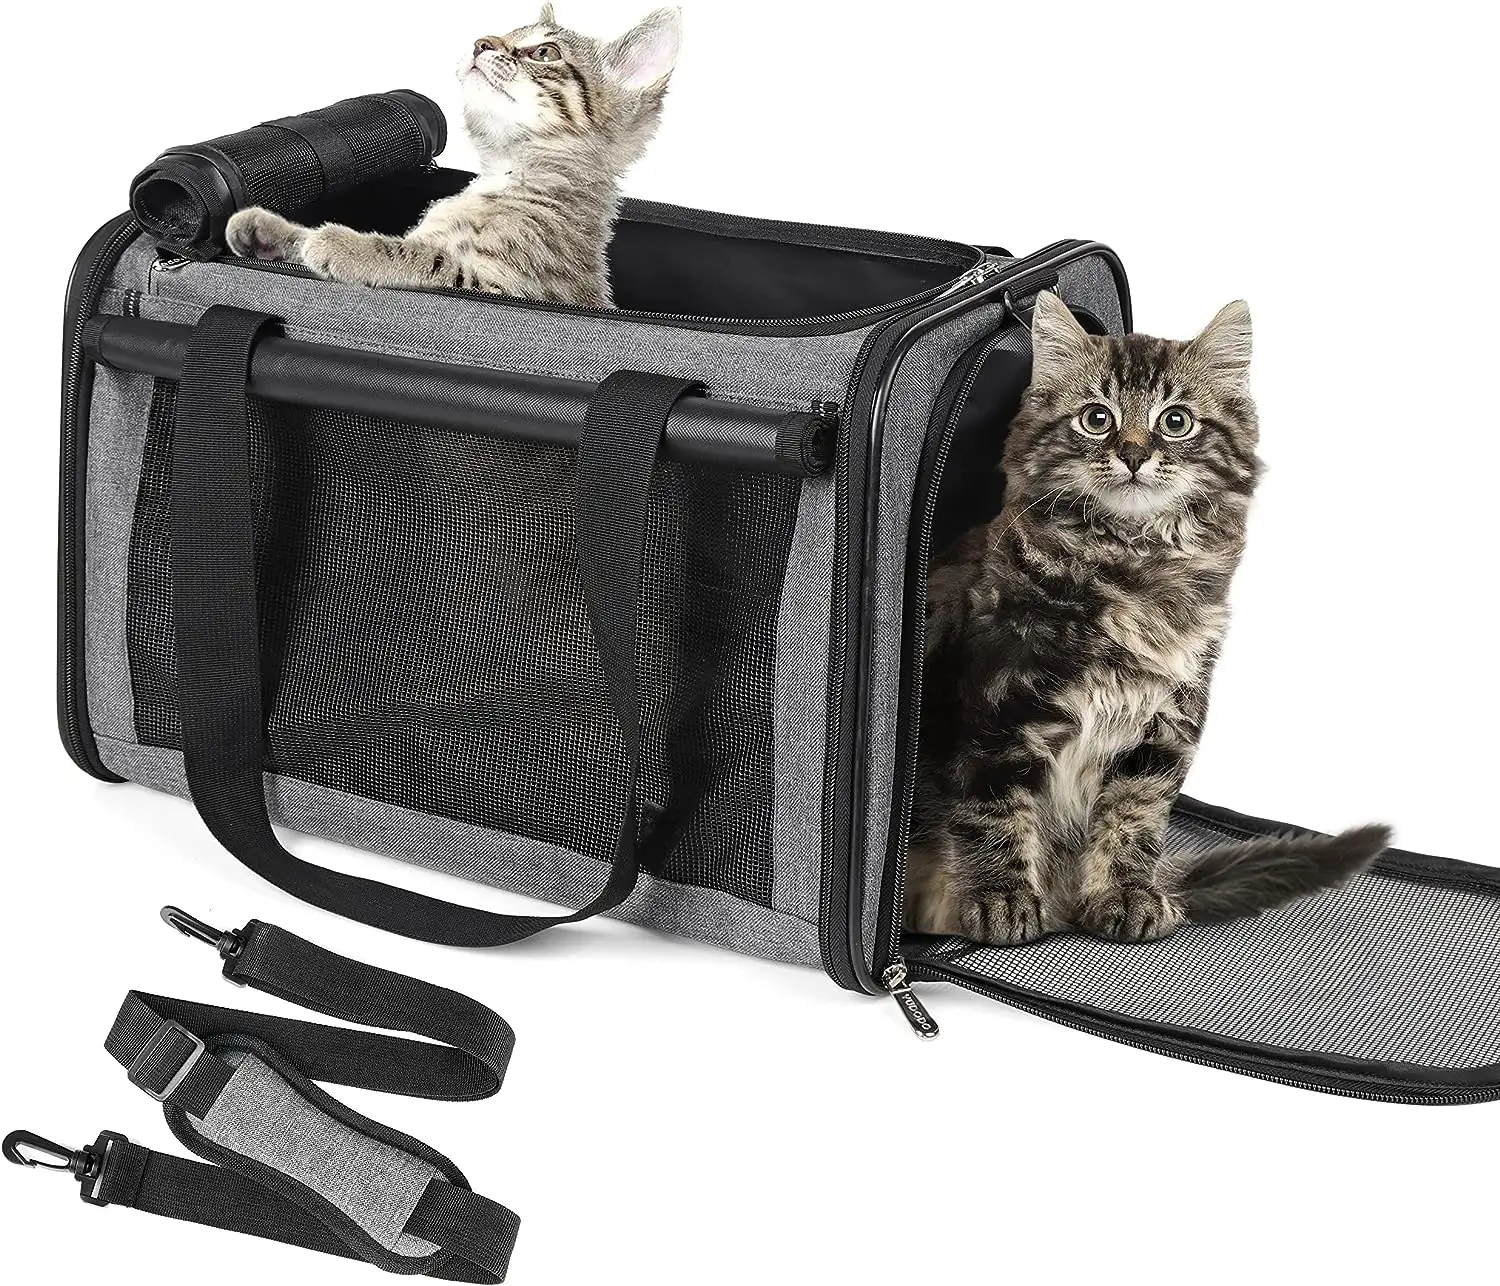 Yeni fabrika genişletilebilir şeffaf kabarcık uzay kapsül Pet kedi taşıyıcı sırt çantası özel yumuşak siyah baskı kedi çantası kedi köpek seyahat